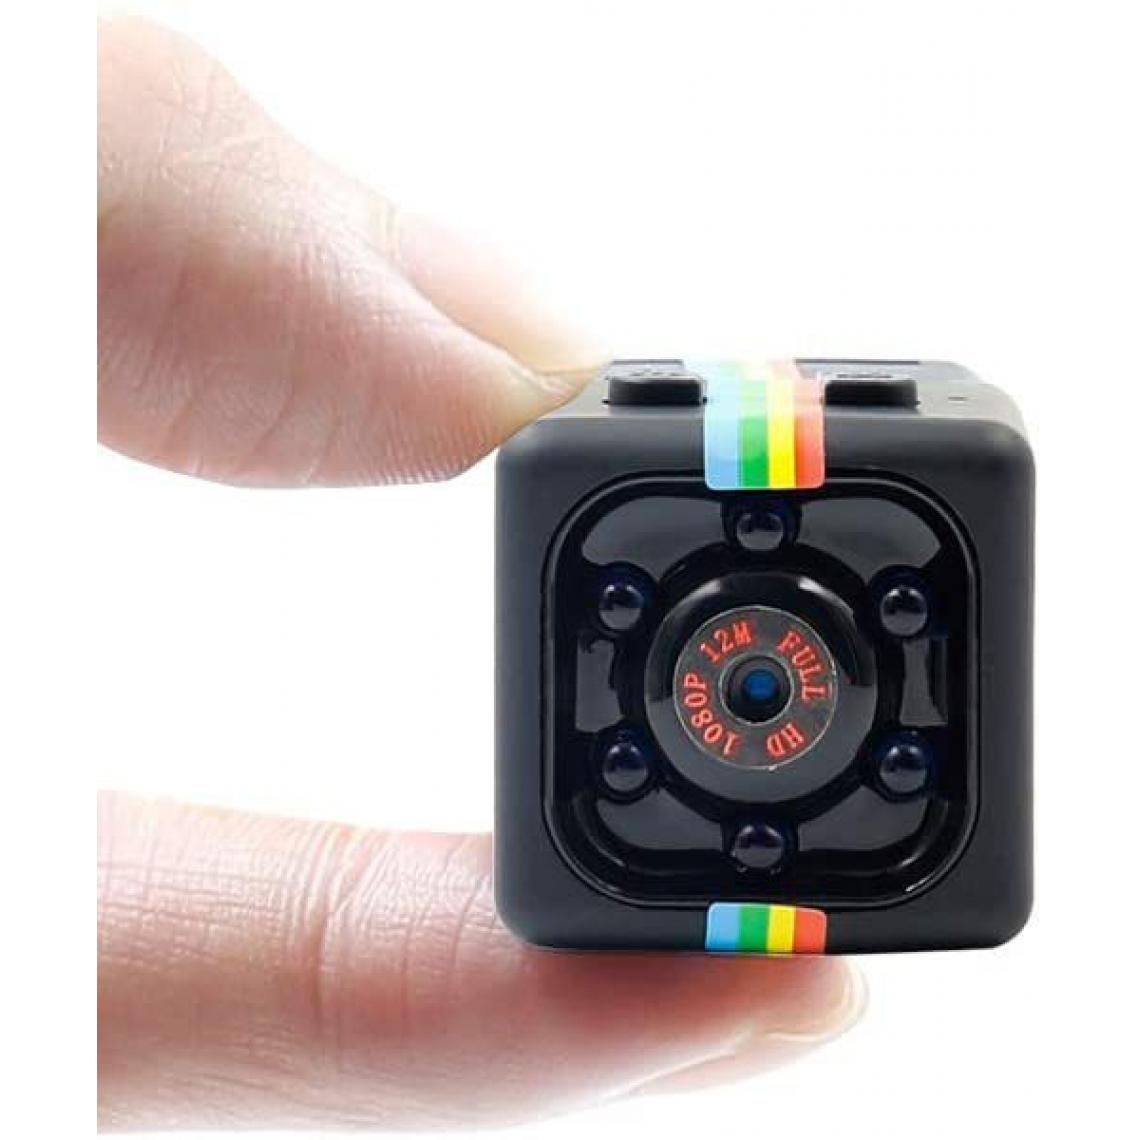 Chrono - Mini caméra espion caméra secrète 1080P mini caméra avec vision nocturne infrarouge détection de mouvement maison petite caméra de surveillance(Noir) - Autres accessoires smartphone